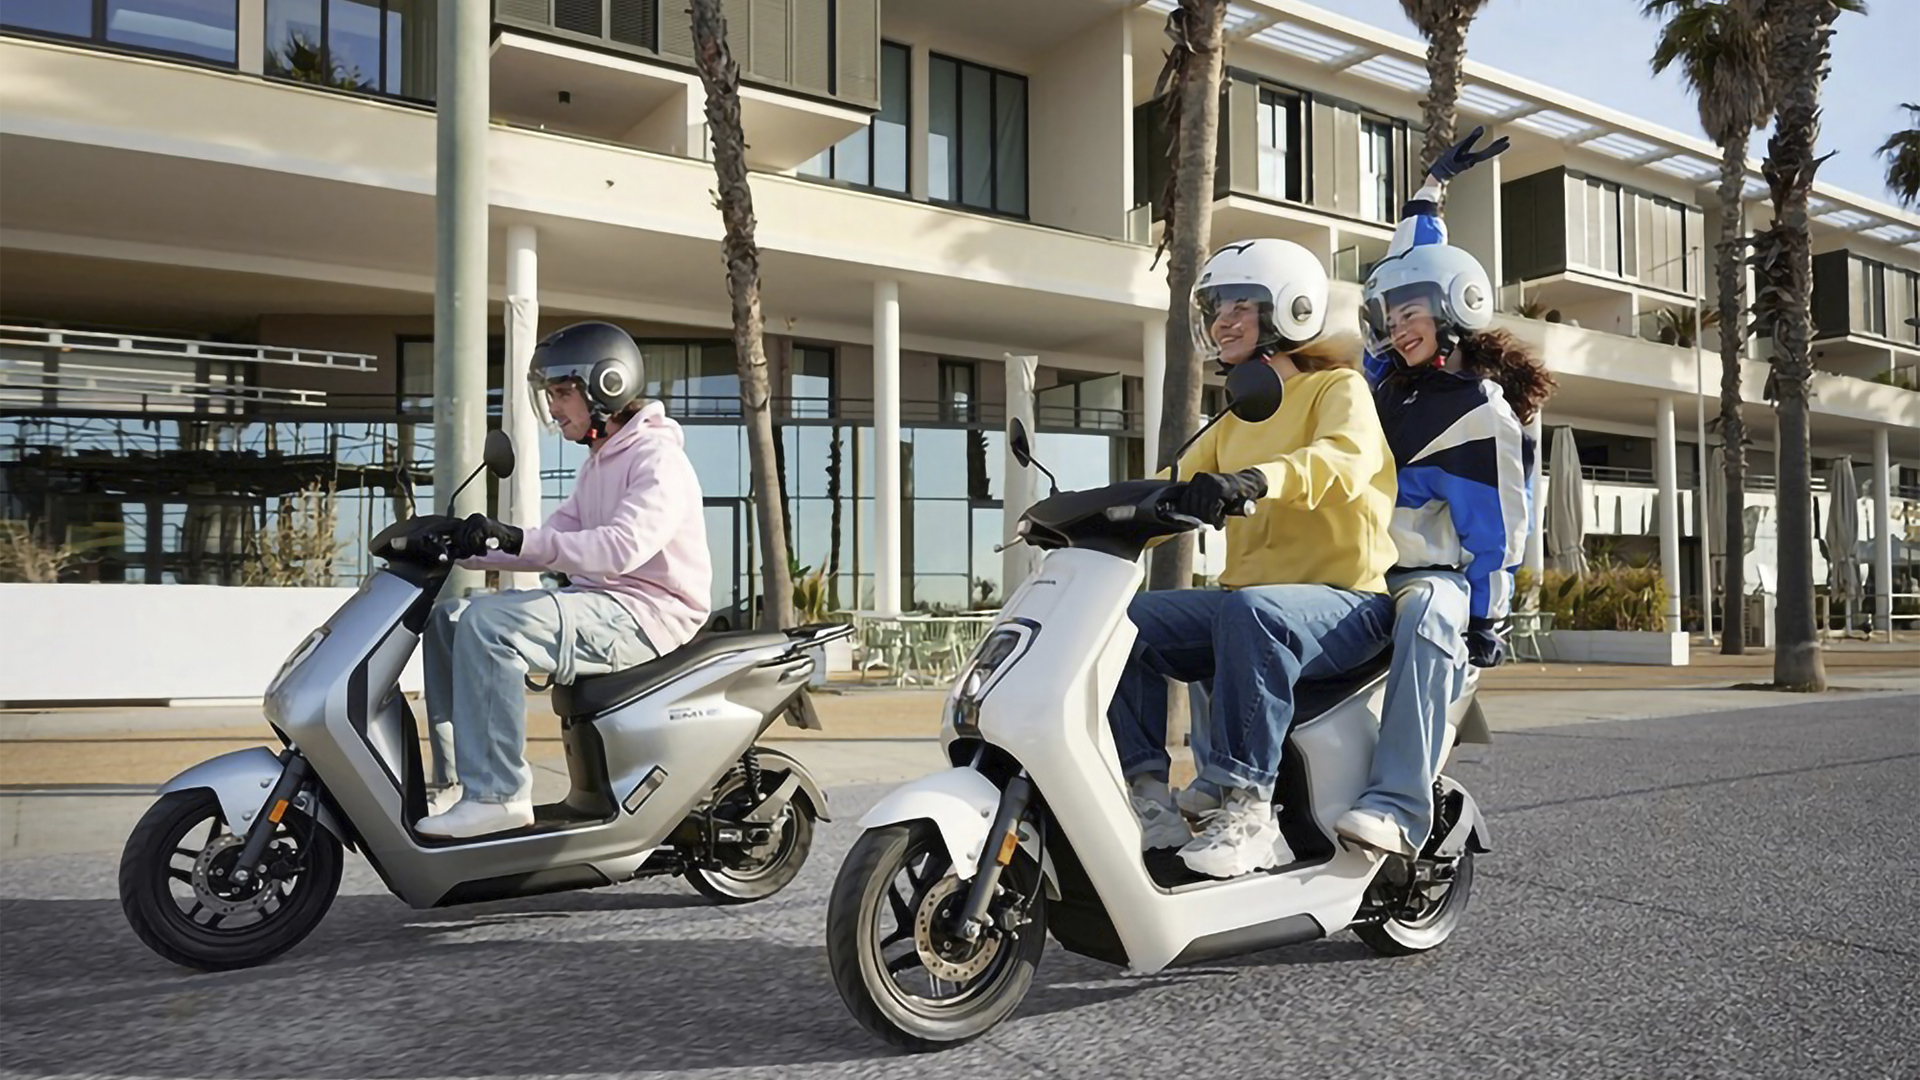 Multinacional Honda expande mercado da Scooter Elétrica EM1-e, com bateria removível e autonomia de 48 km